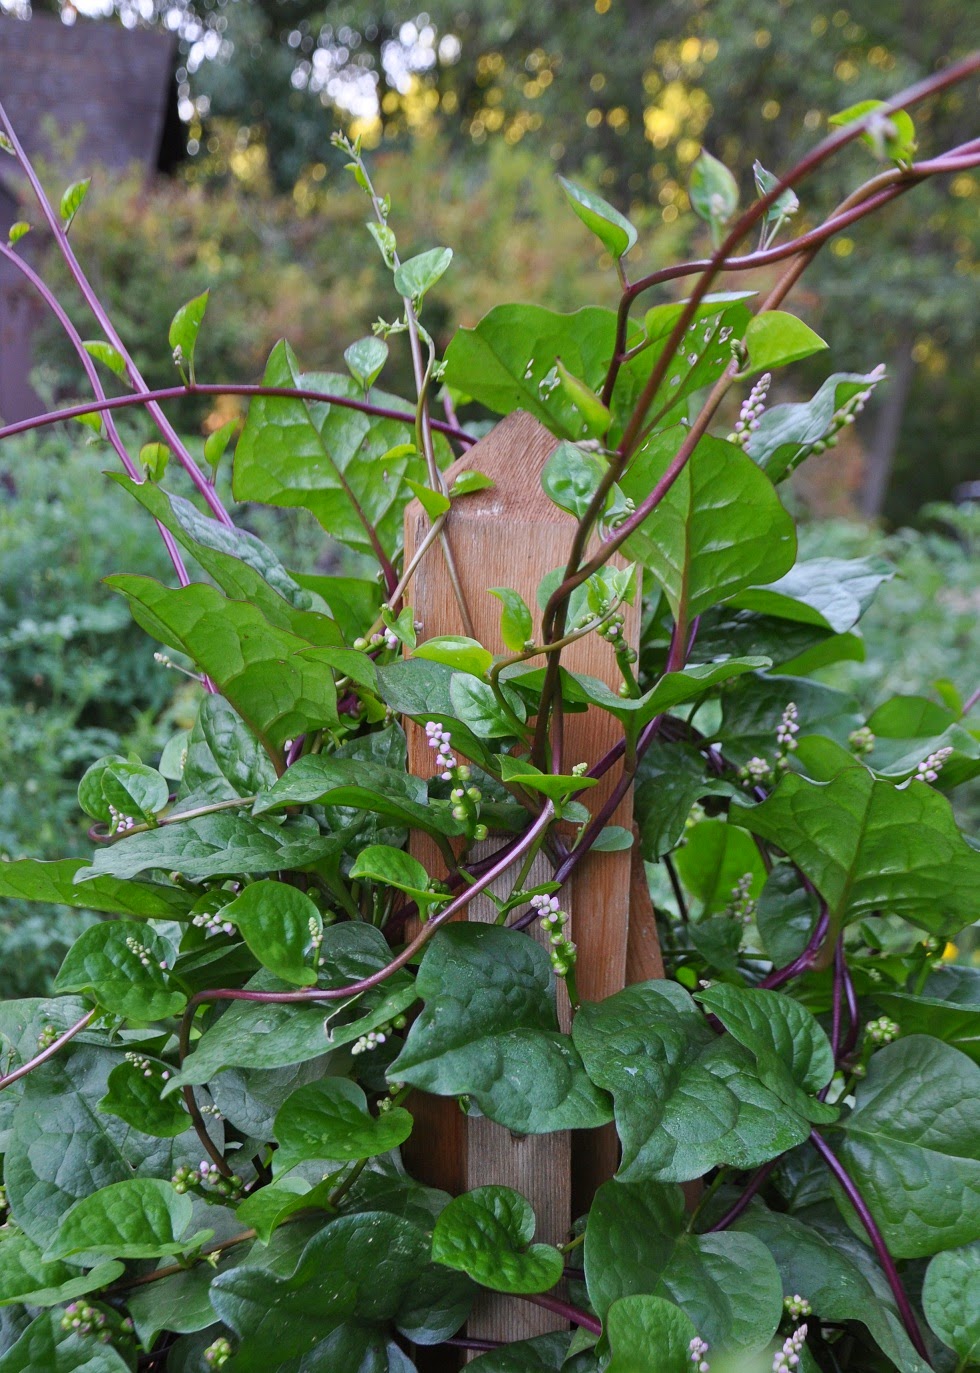 garden spinach